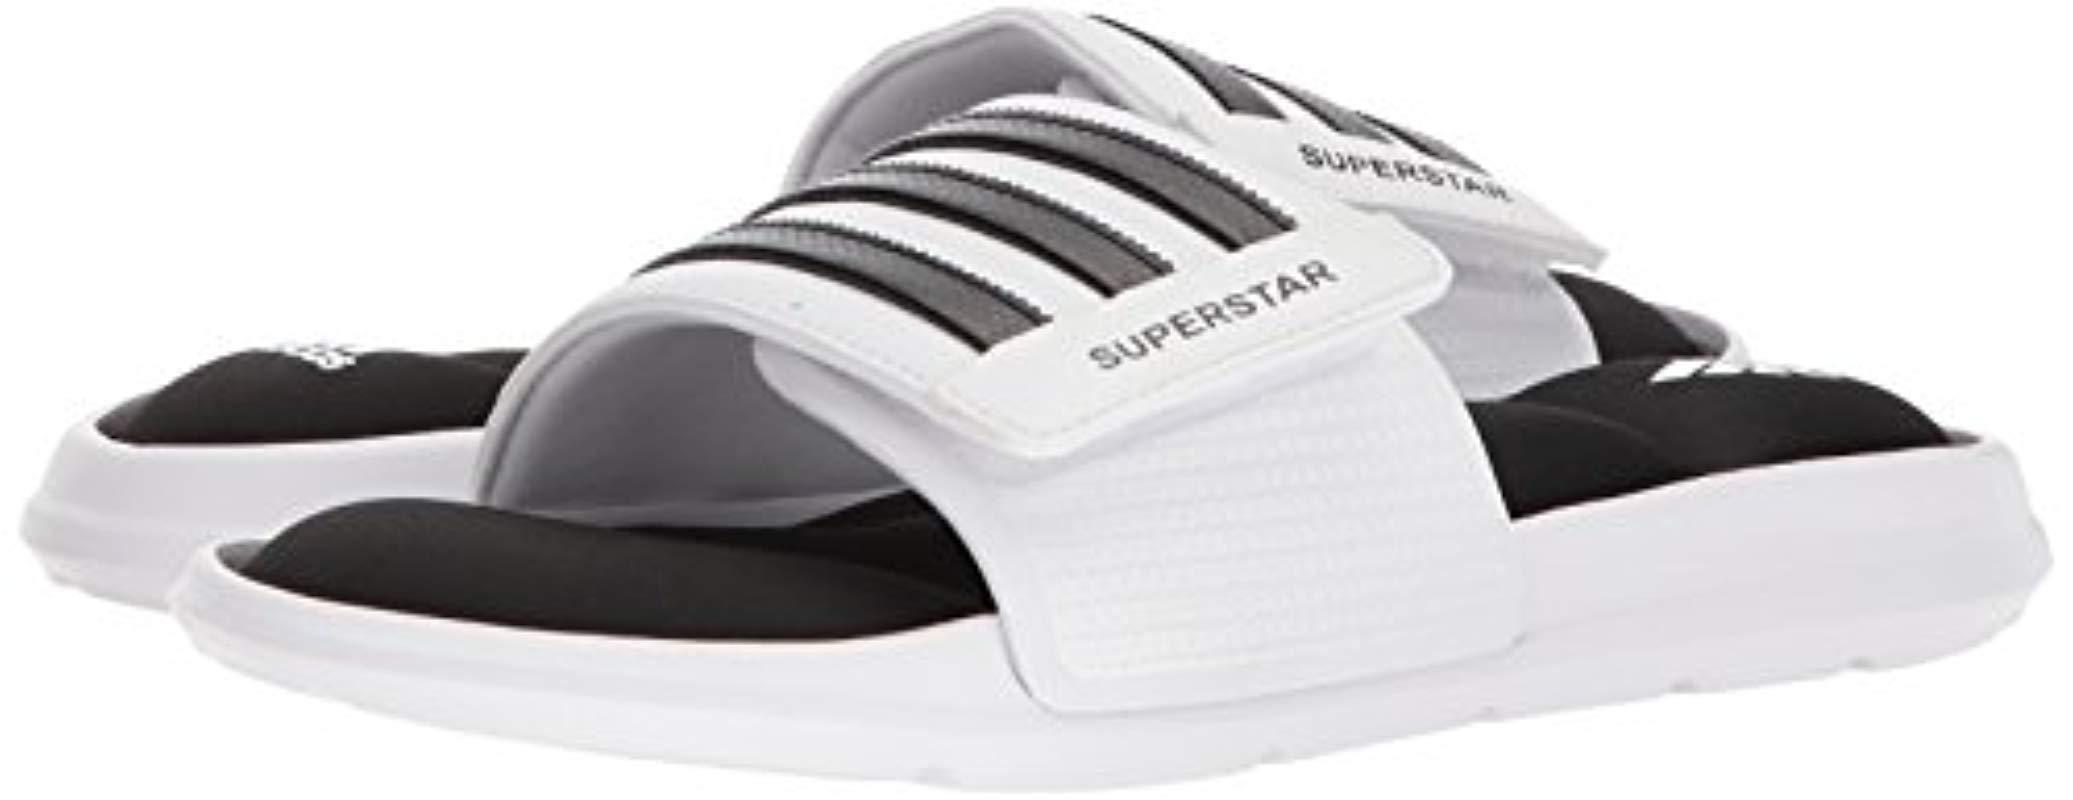 adidas superstar 5g slides white